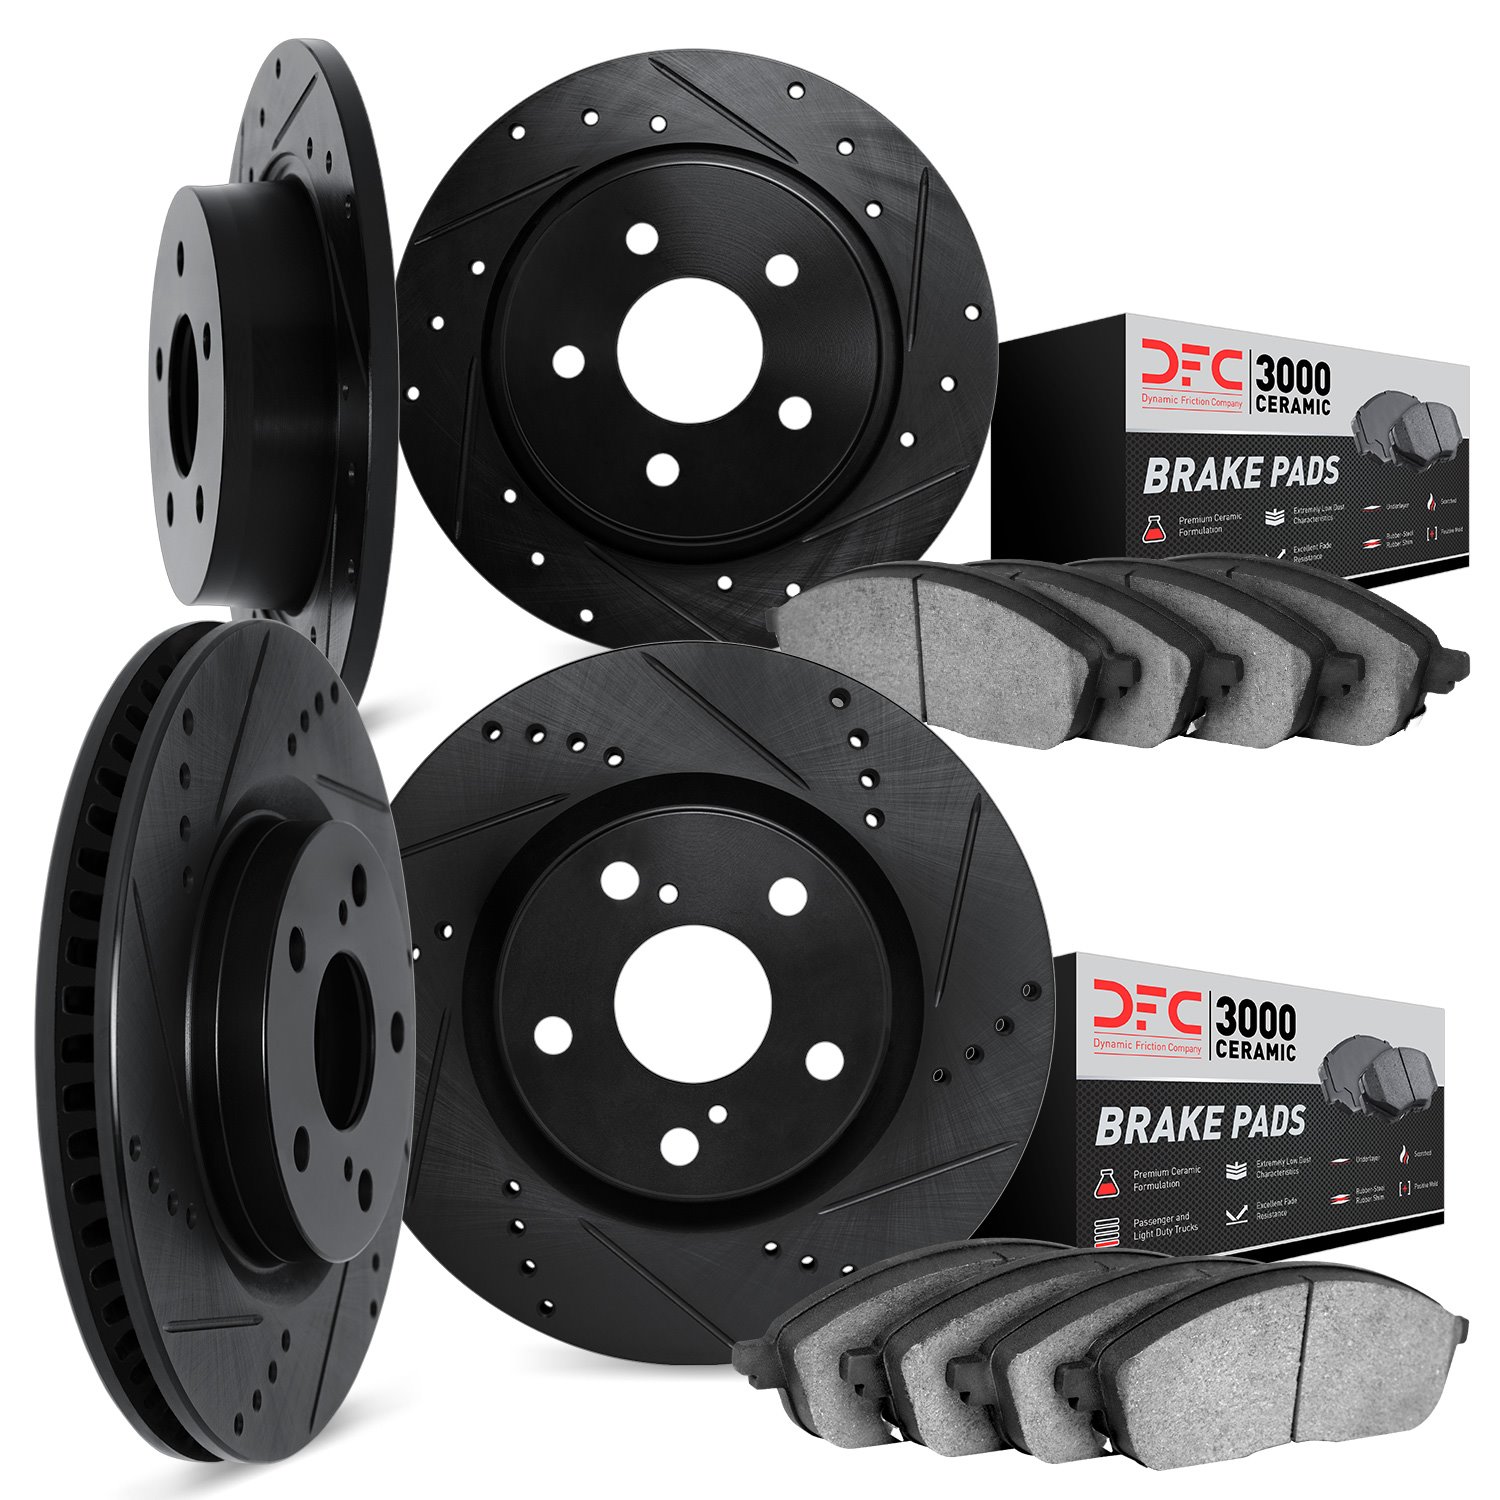 8304-03081 Drilled/Slotted Brake Rotors with 3000-Series Ceramic Brake Pads Kit [Black], Fits Select Kia/Hyundai/Genesis, Positi